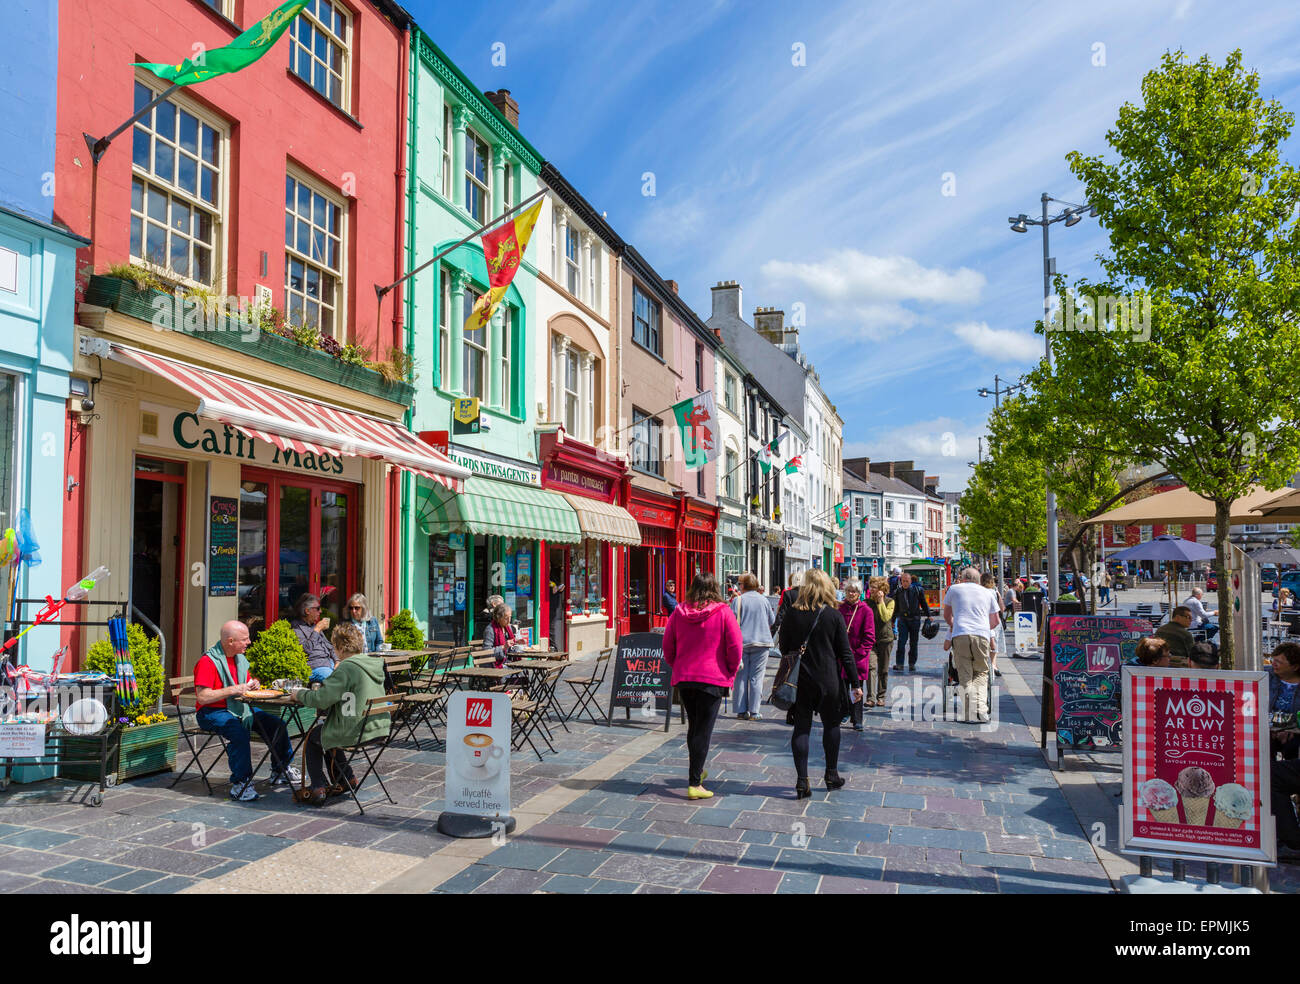 Tiendas, pubs y cafeterías de la Plaza del Castillo, Caernarfon, Gwynedd, Gales, Reino Unido Foto de stock